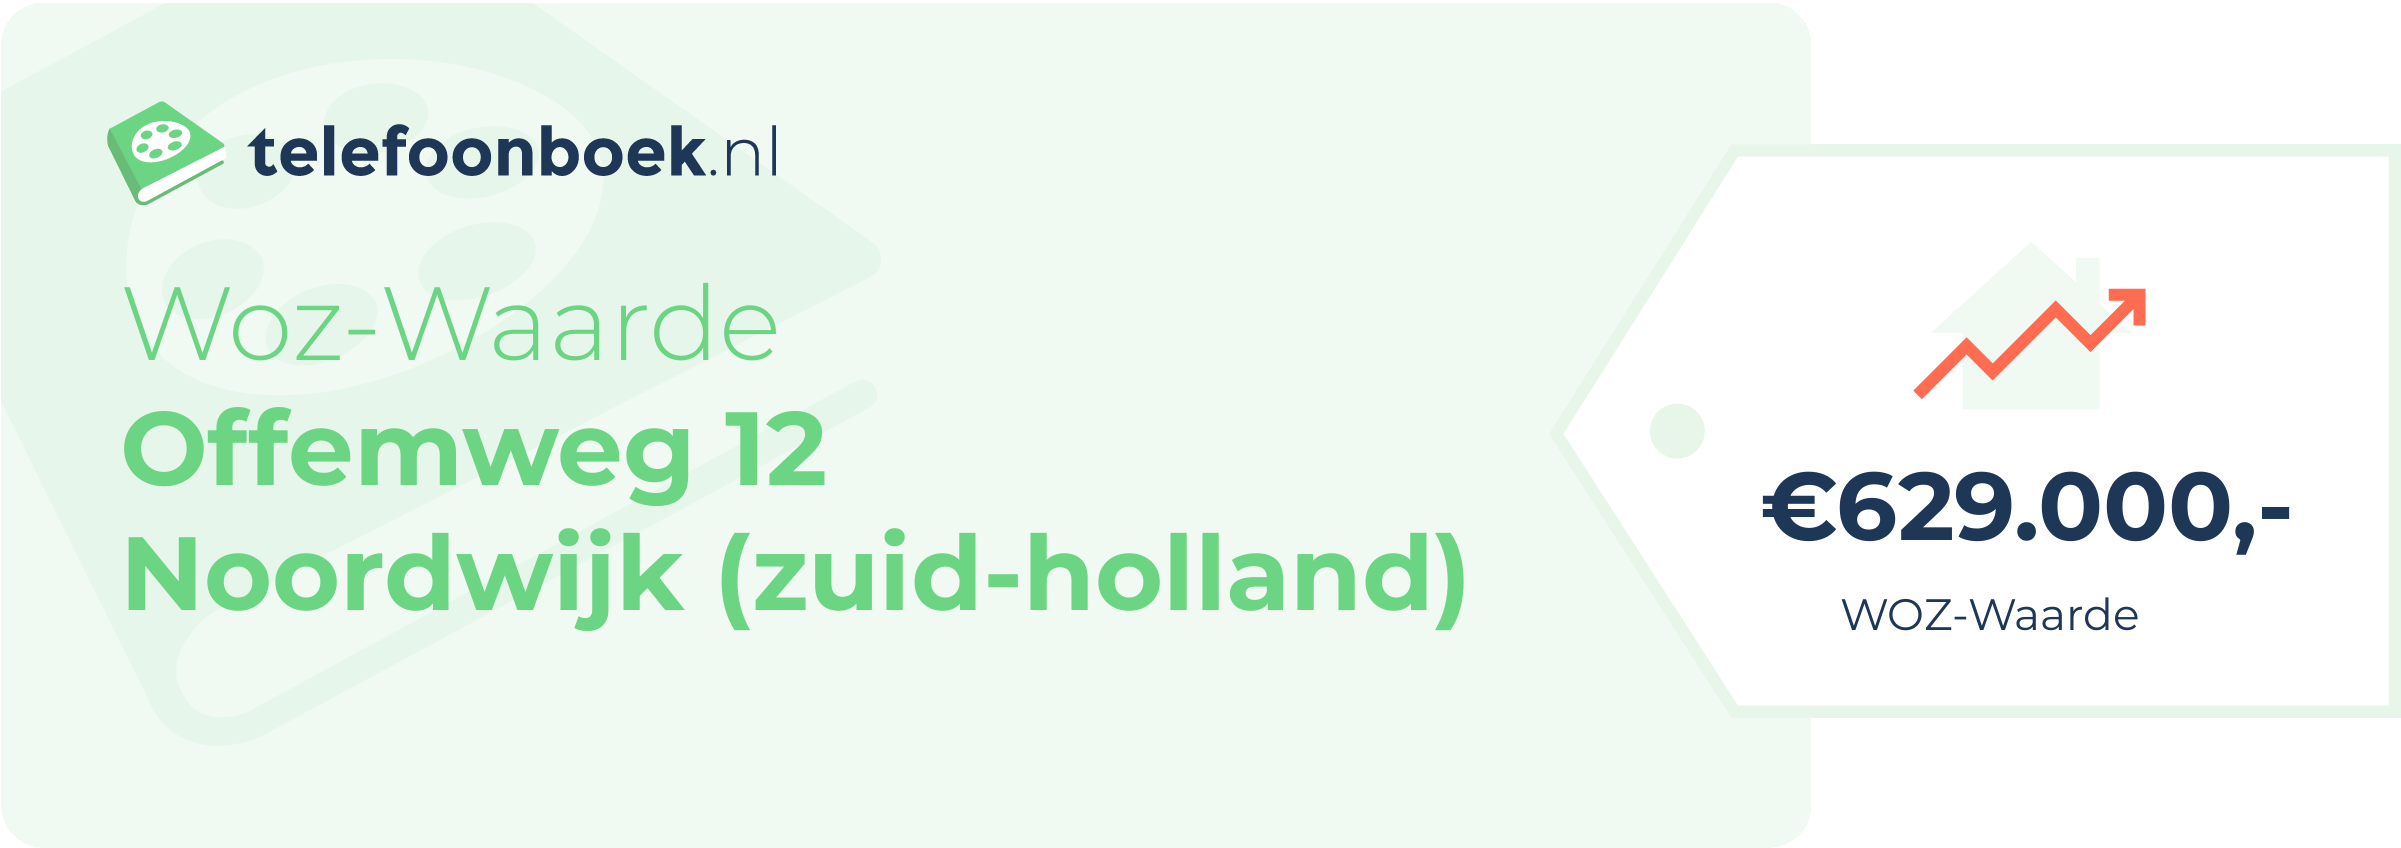 WOZ-waarde Offemweg 12 Noordwijk (Zuid-Holland)